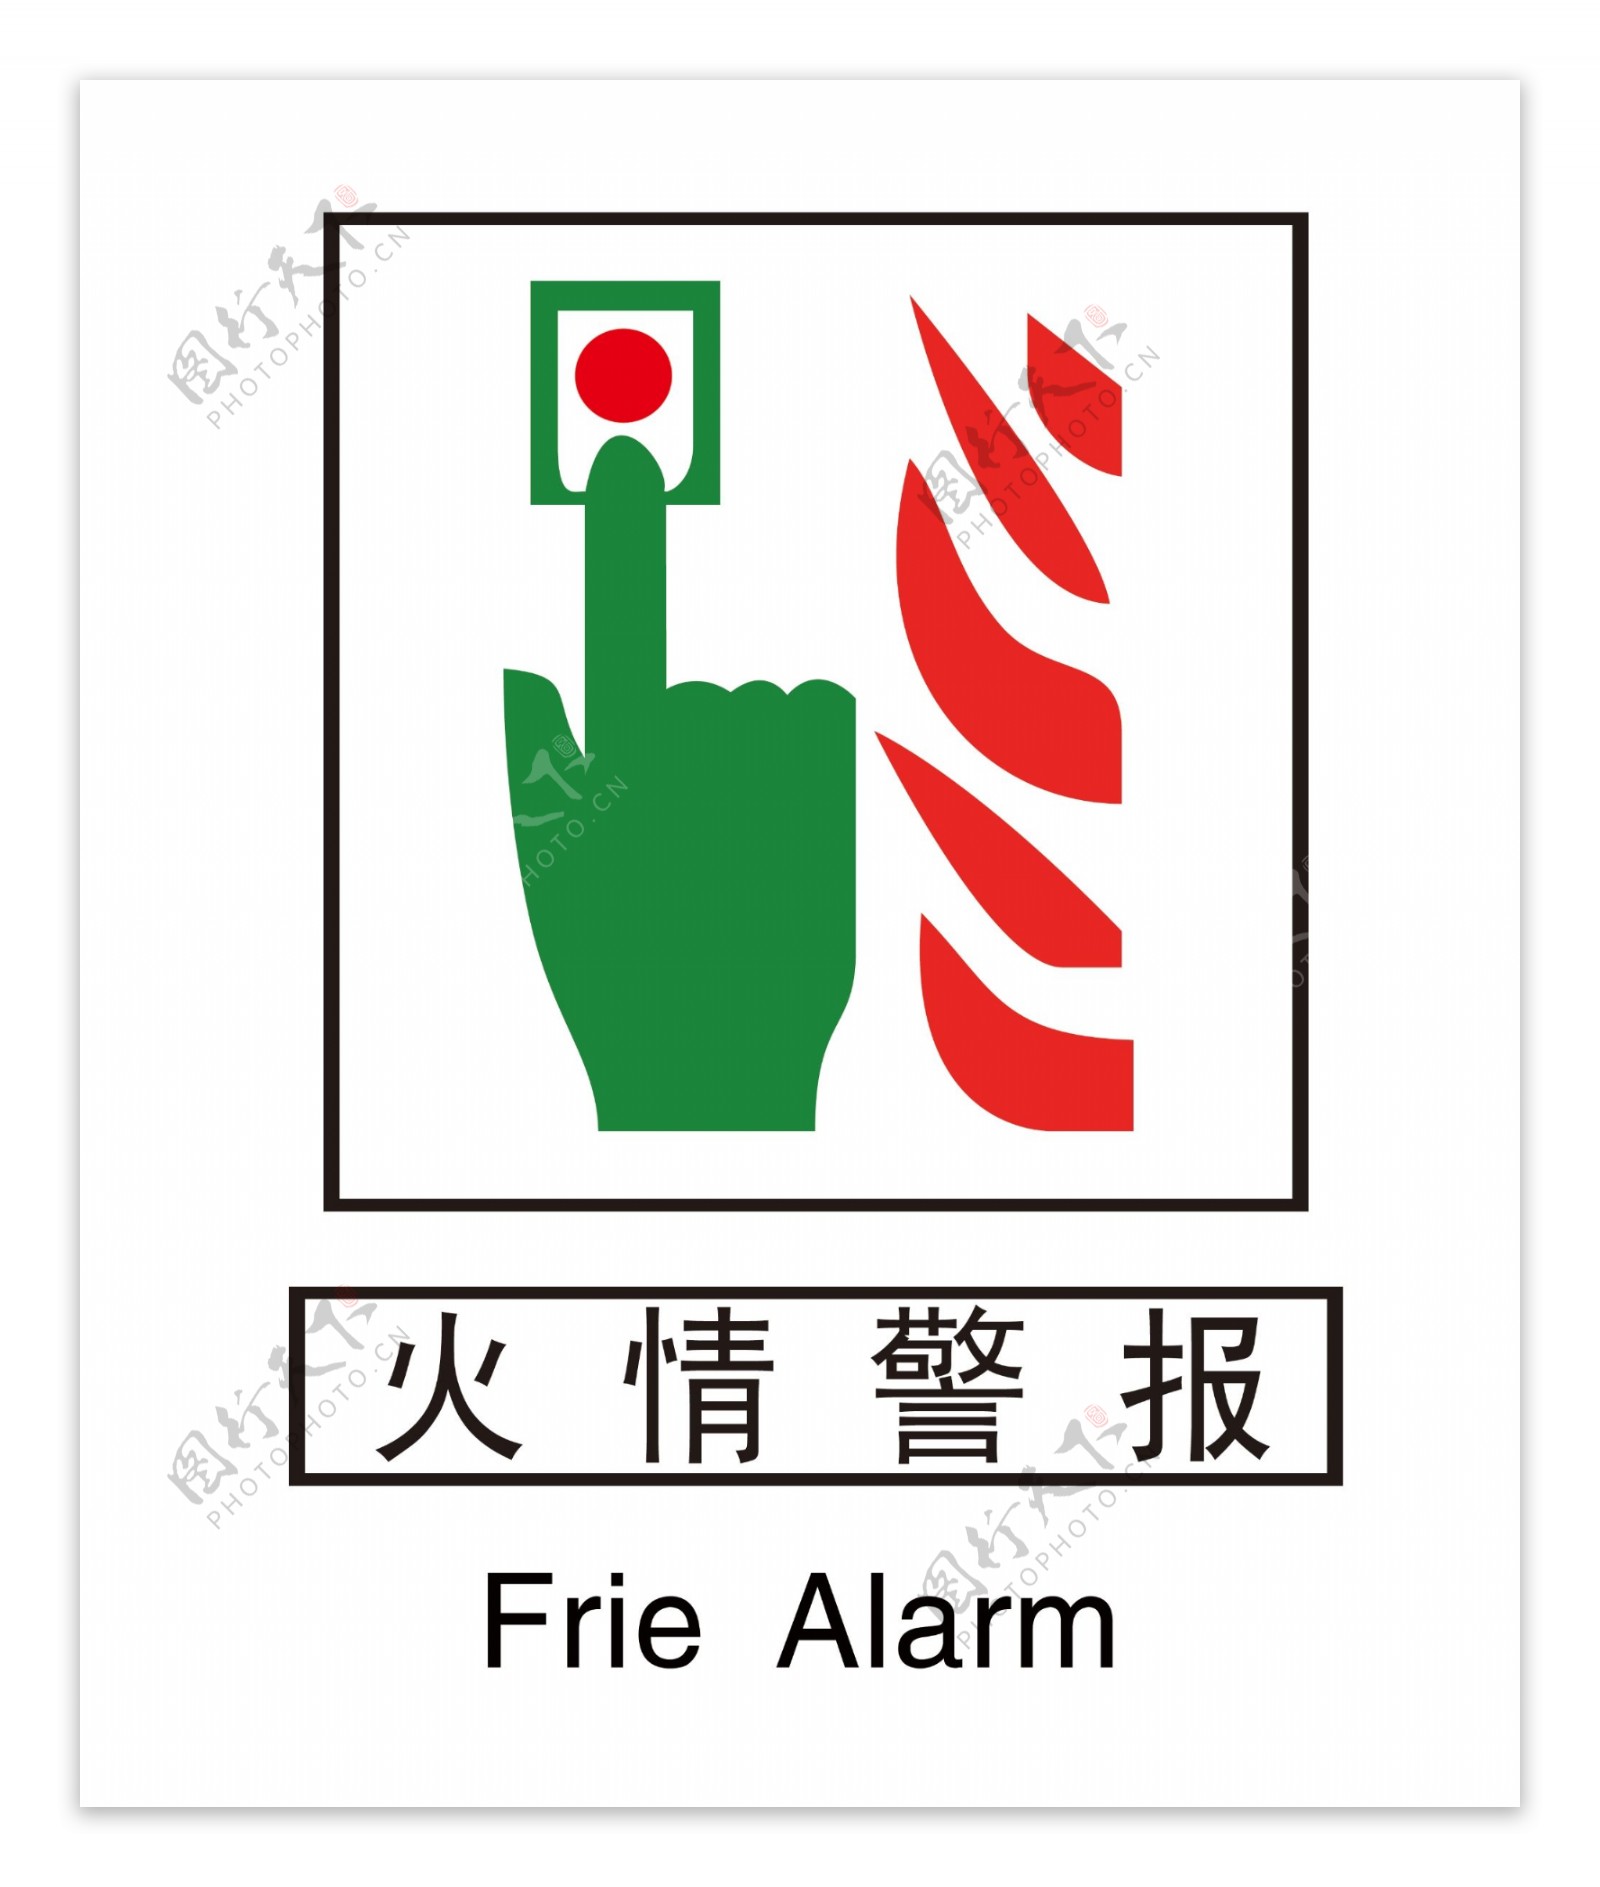 消防安全标志图片